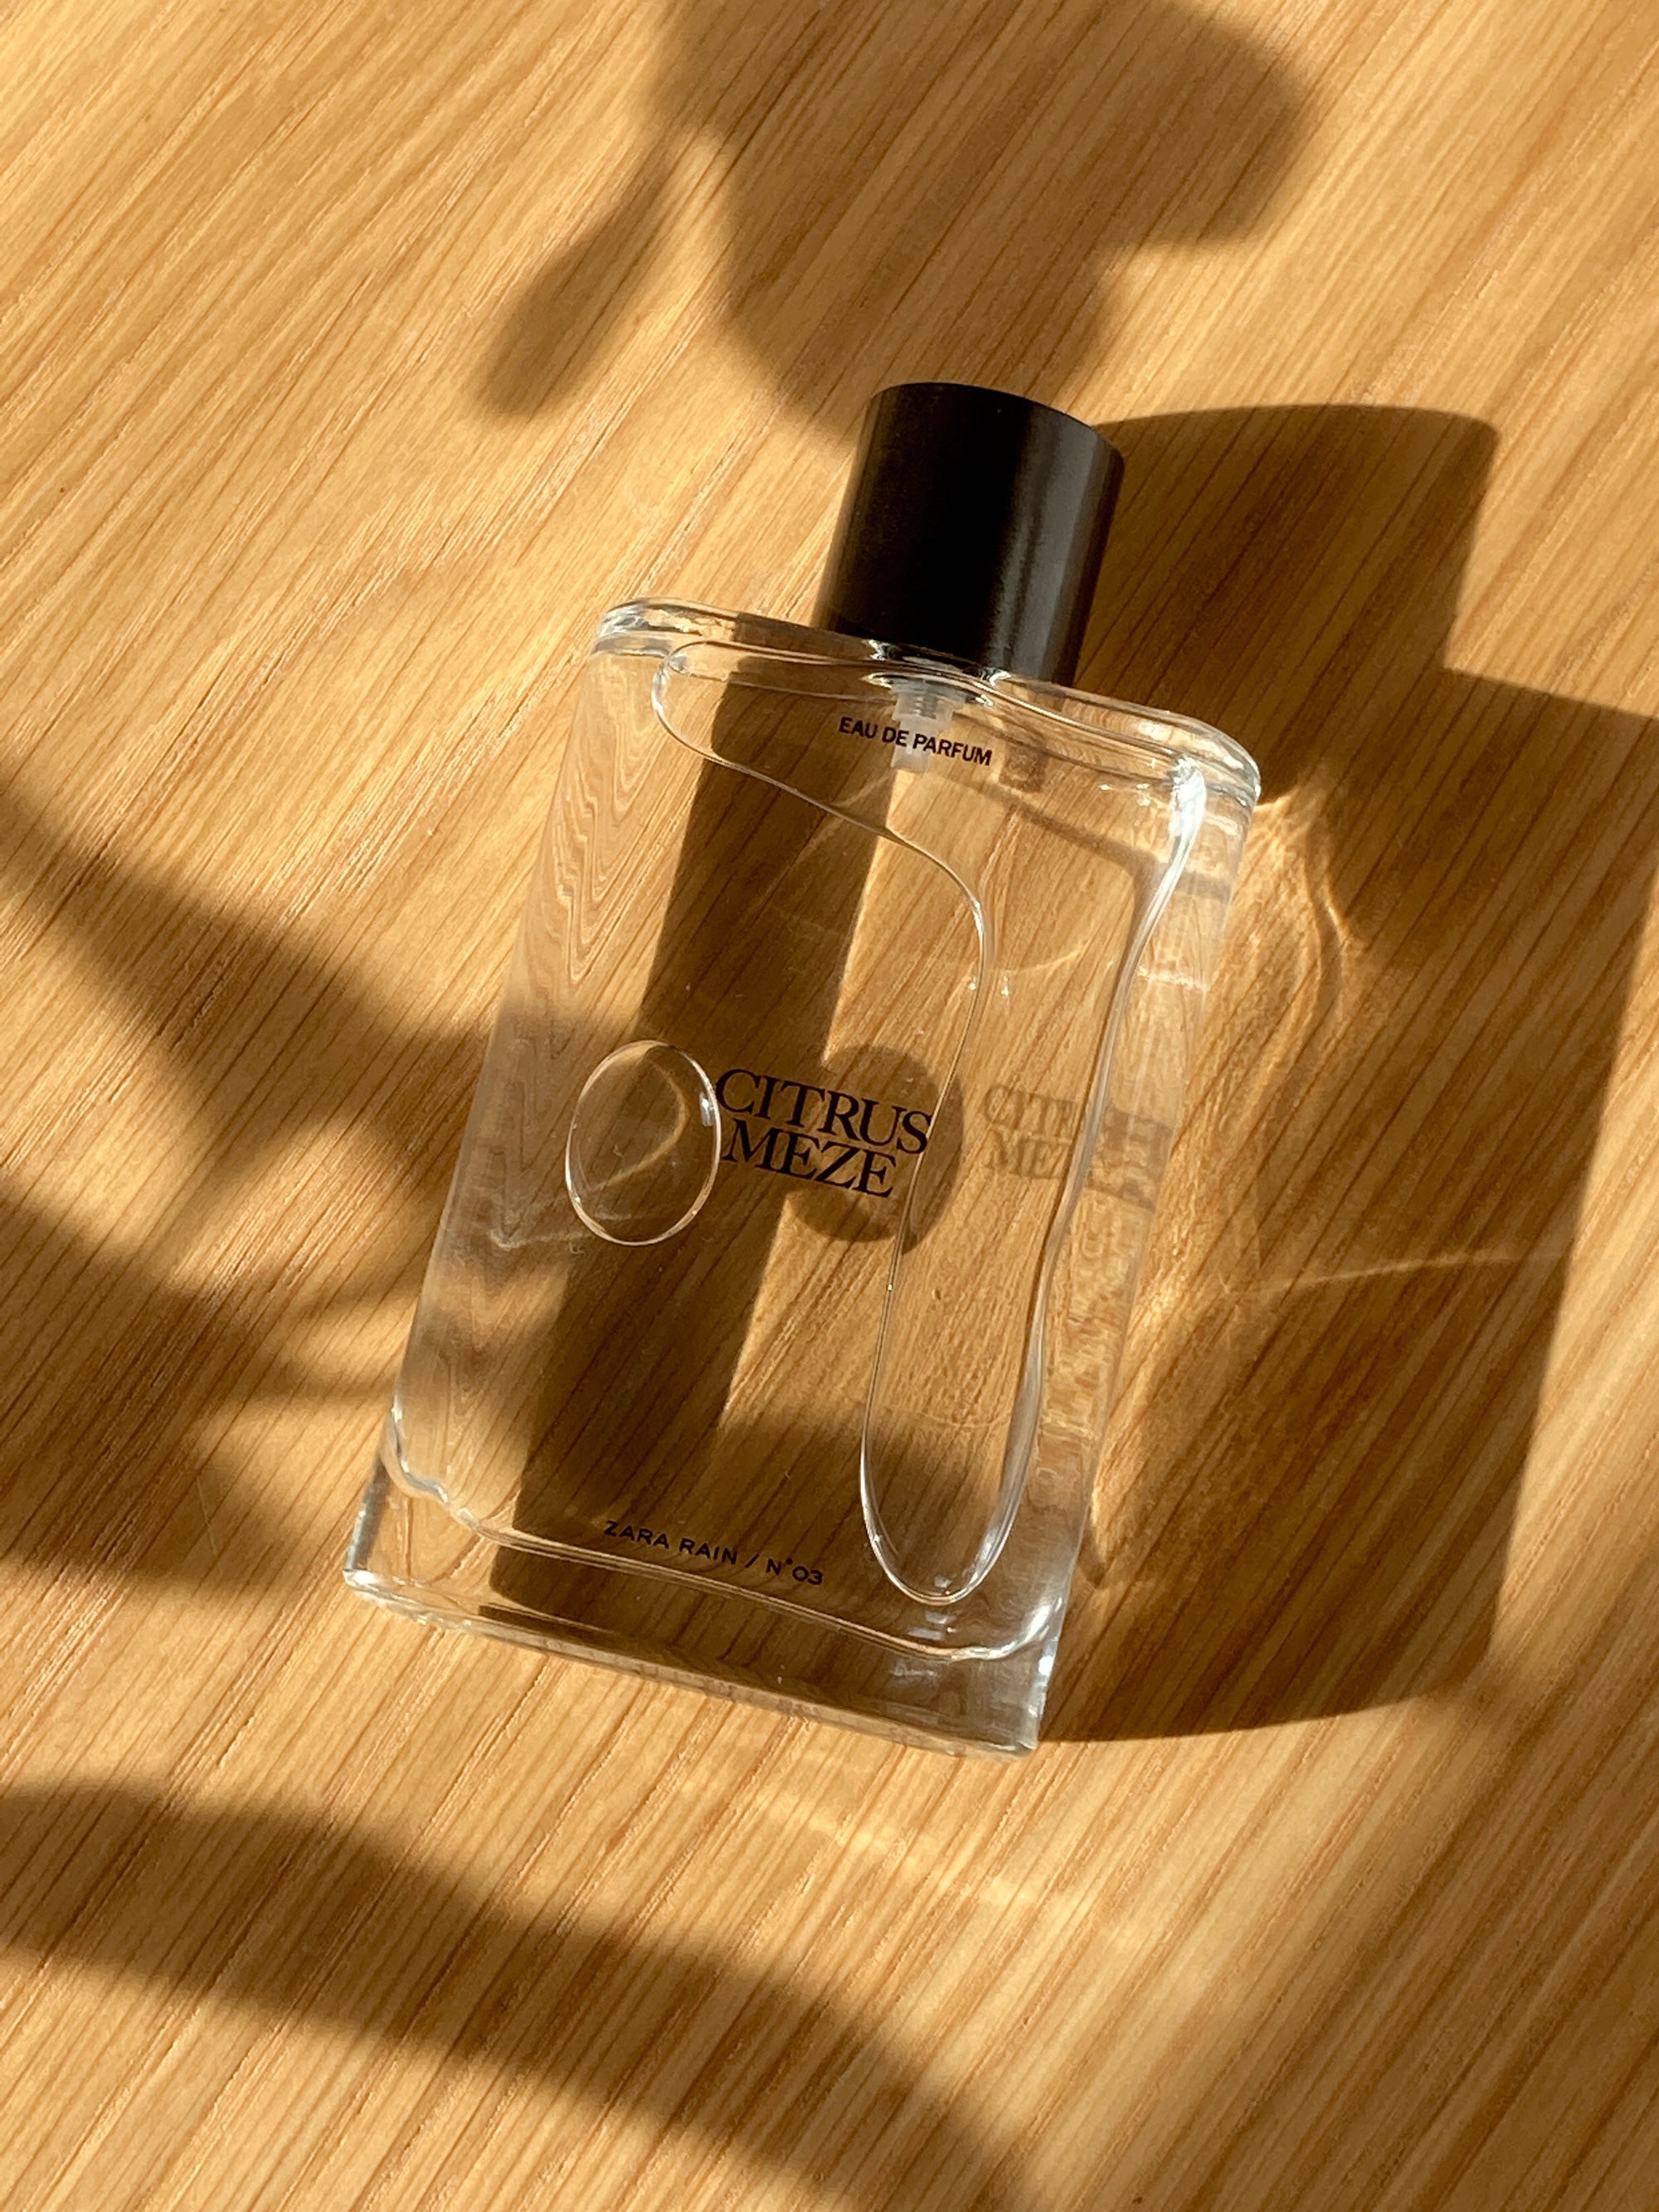 Wonder Rose So Intense Zara perfume - a new fragrance for women 2022